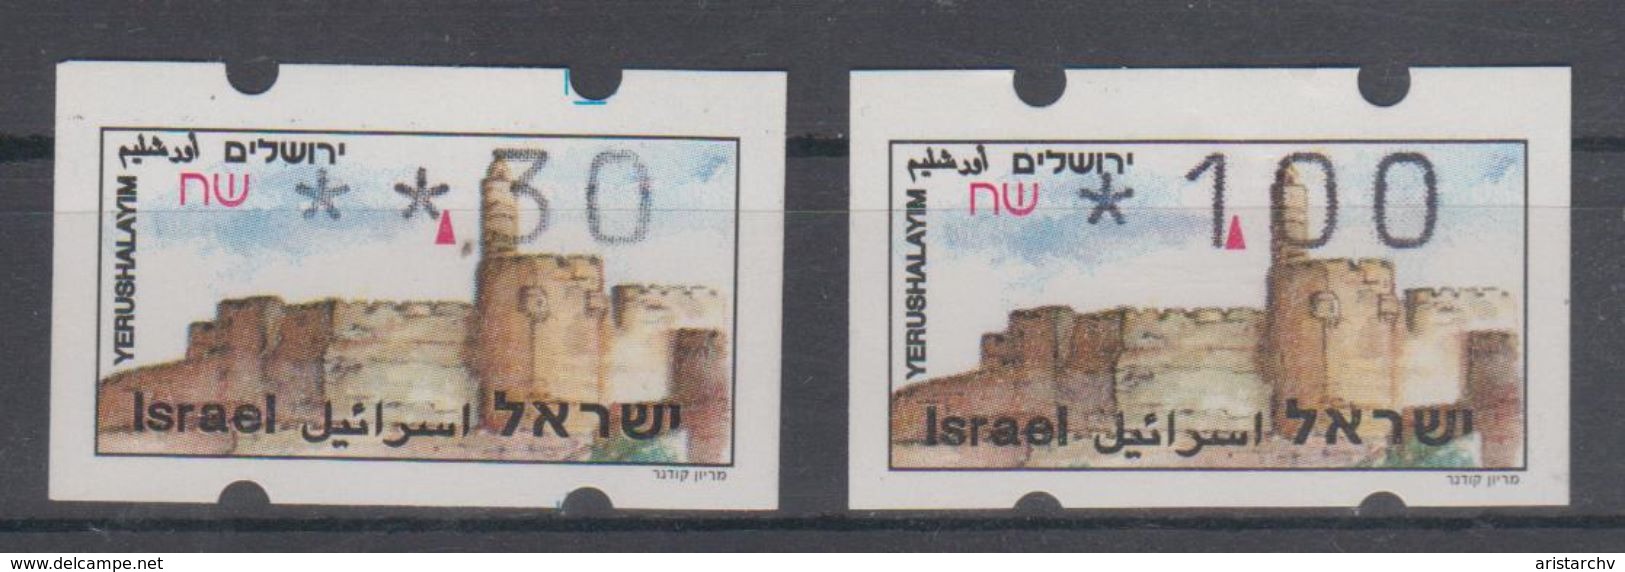 ISRAEL 1994 SIMA ATM JERUSALEM YERUSHALAYIM 0.30 1 SHEKELS - Franking Labels